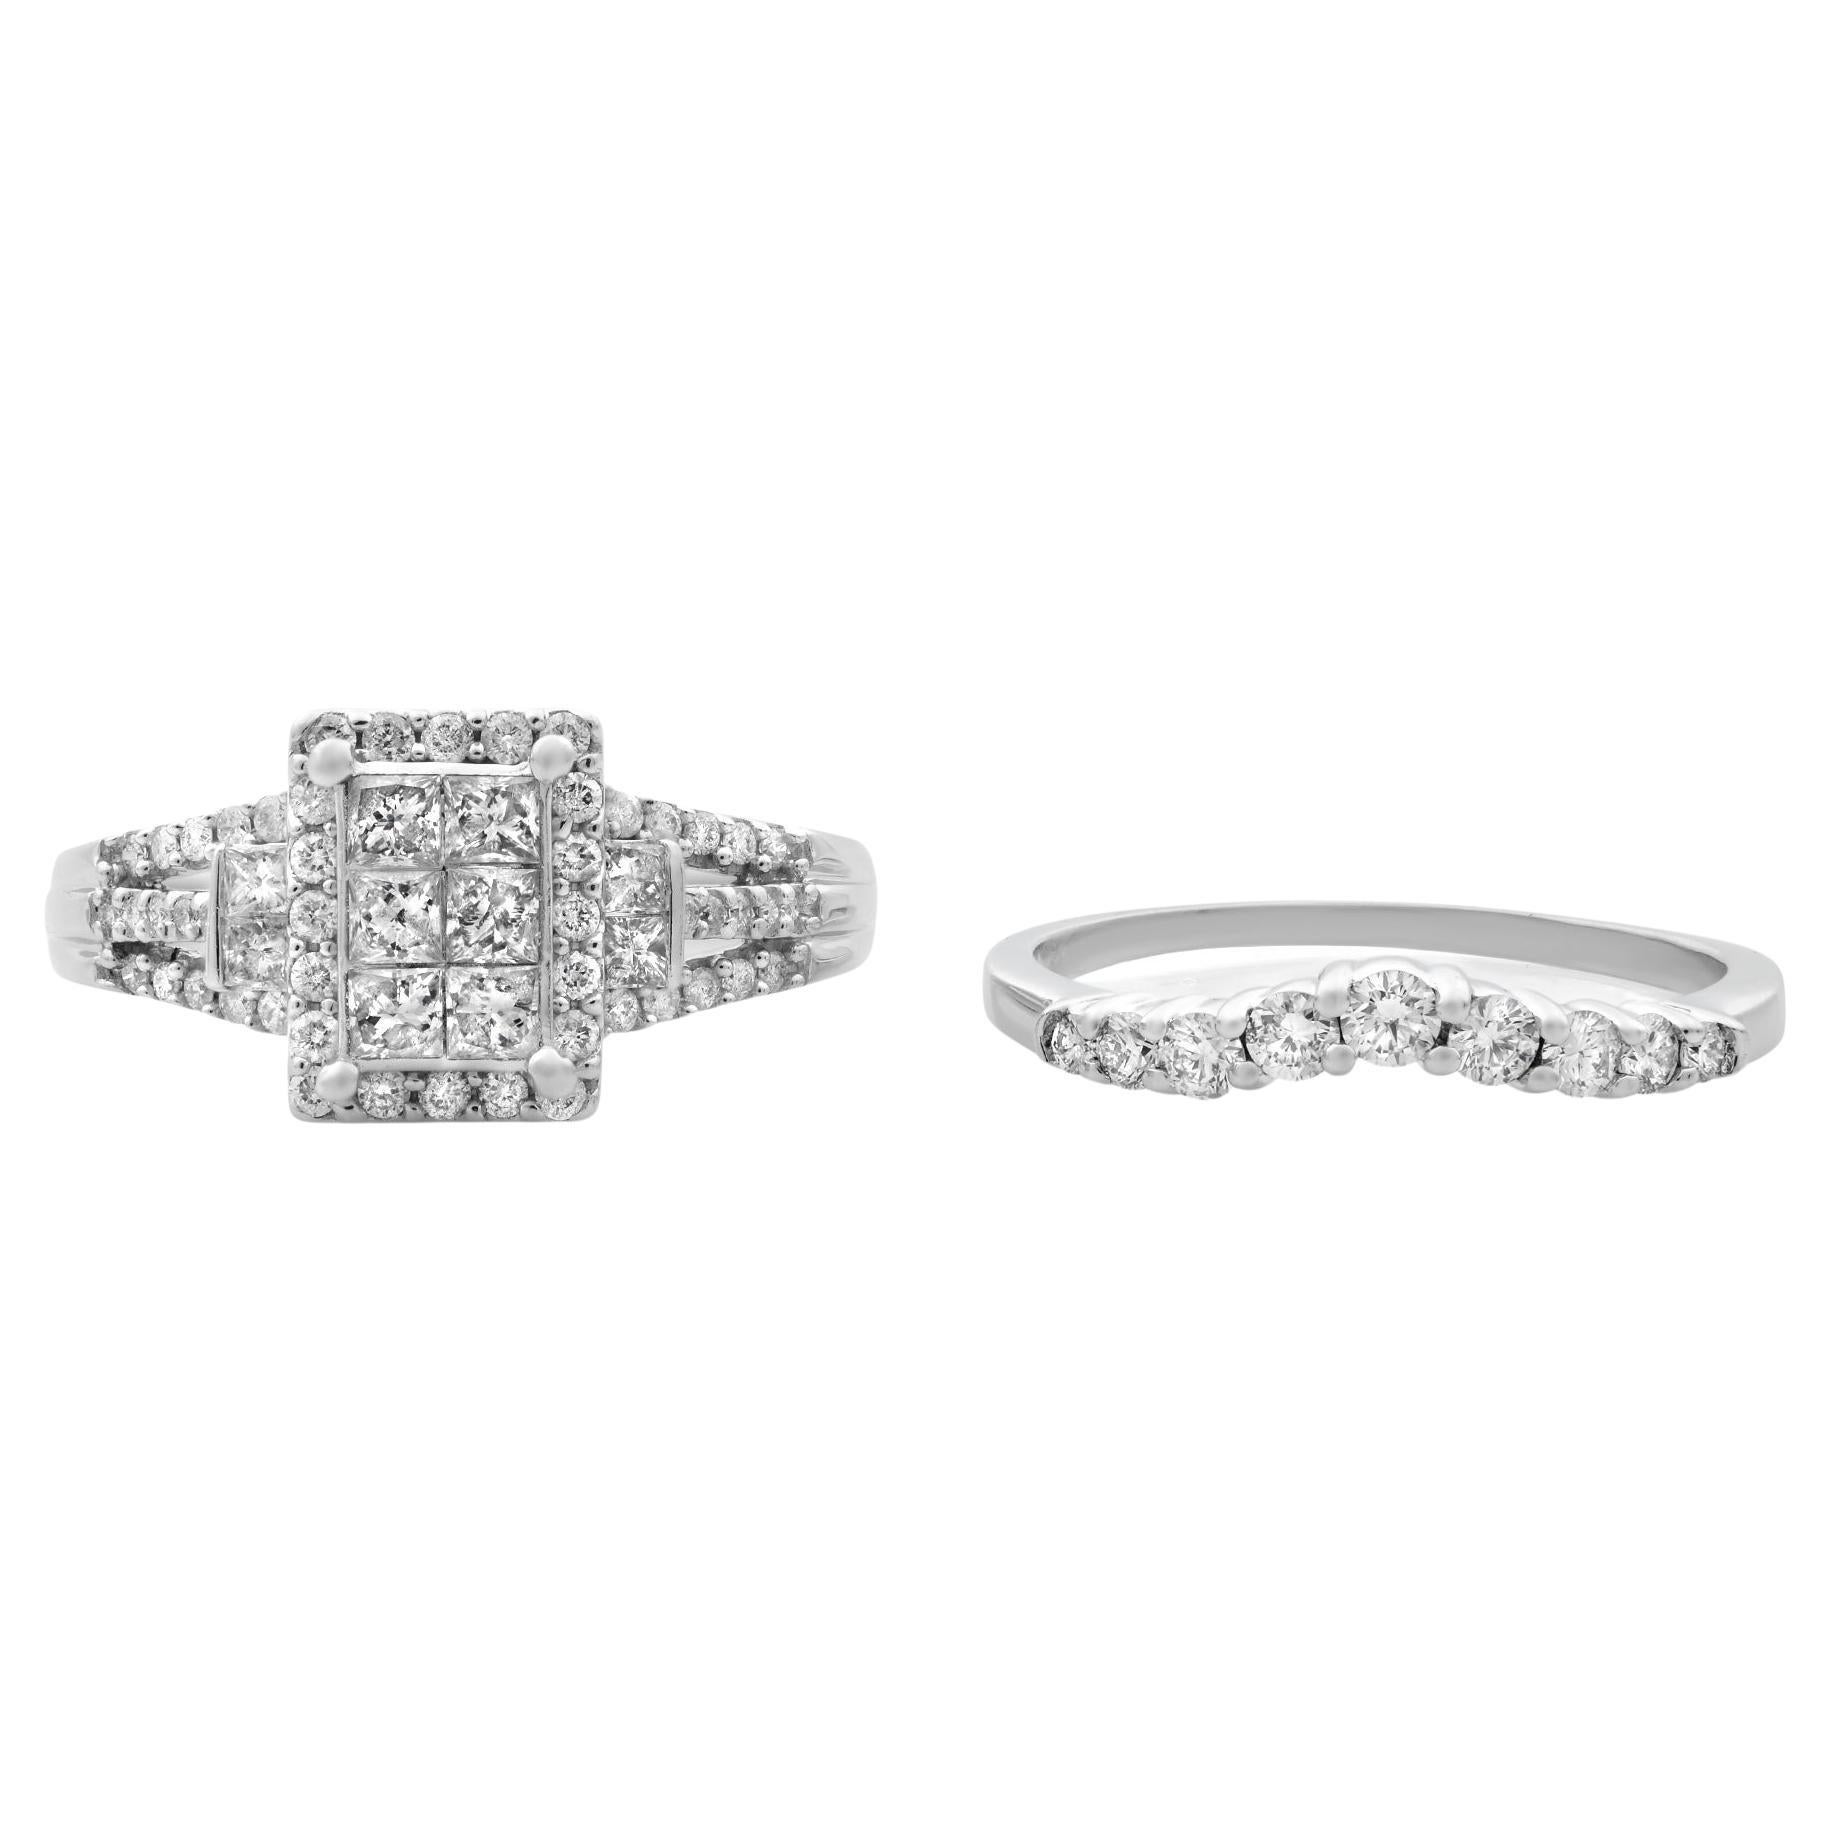 Rachel Koen Diamond Engagement Set of Rings 14K White Gold 1.5cttw For Sale